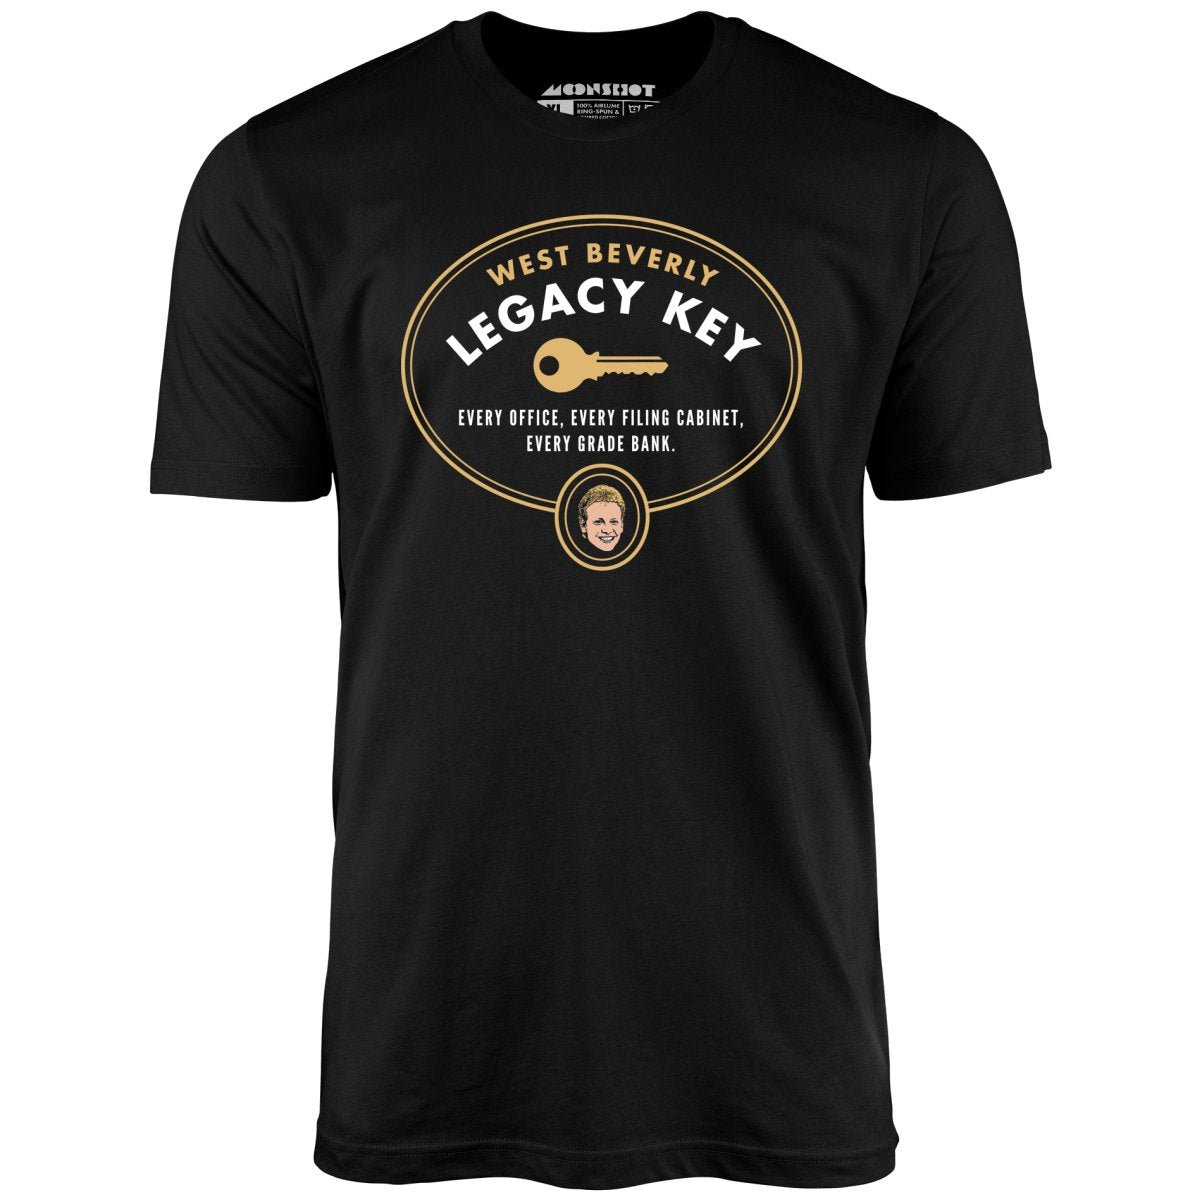 West Beverly Legacy Key - 90210 - Unisex T-Shirt